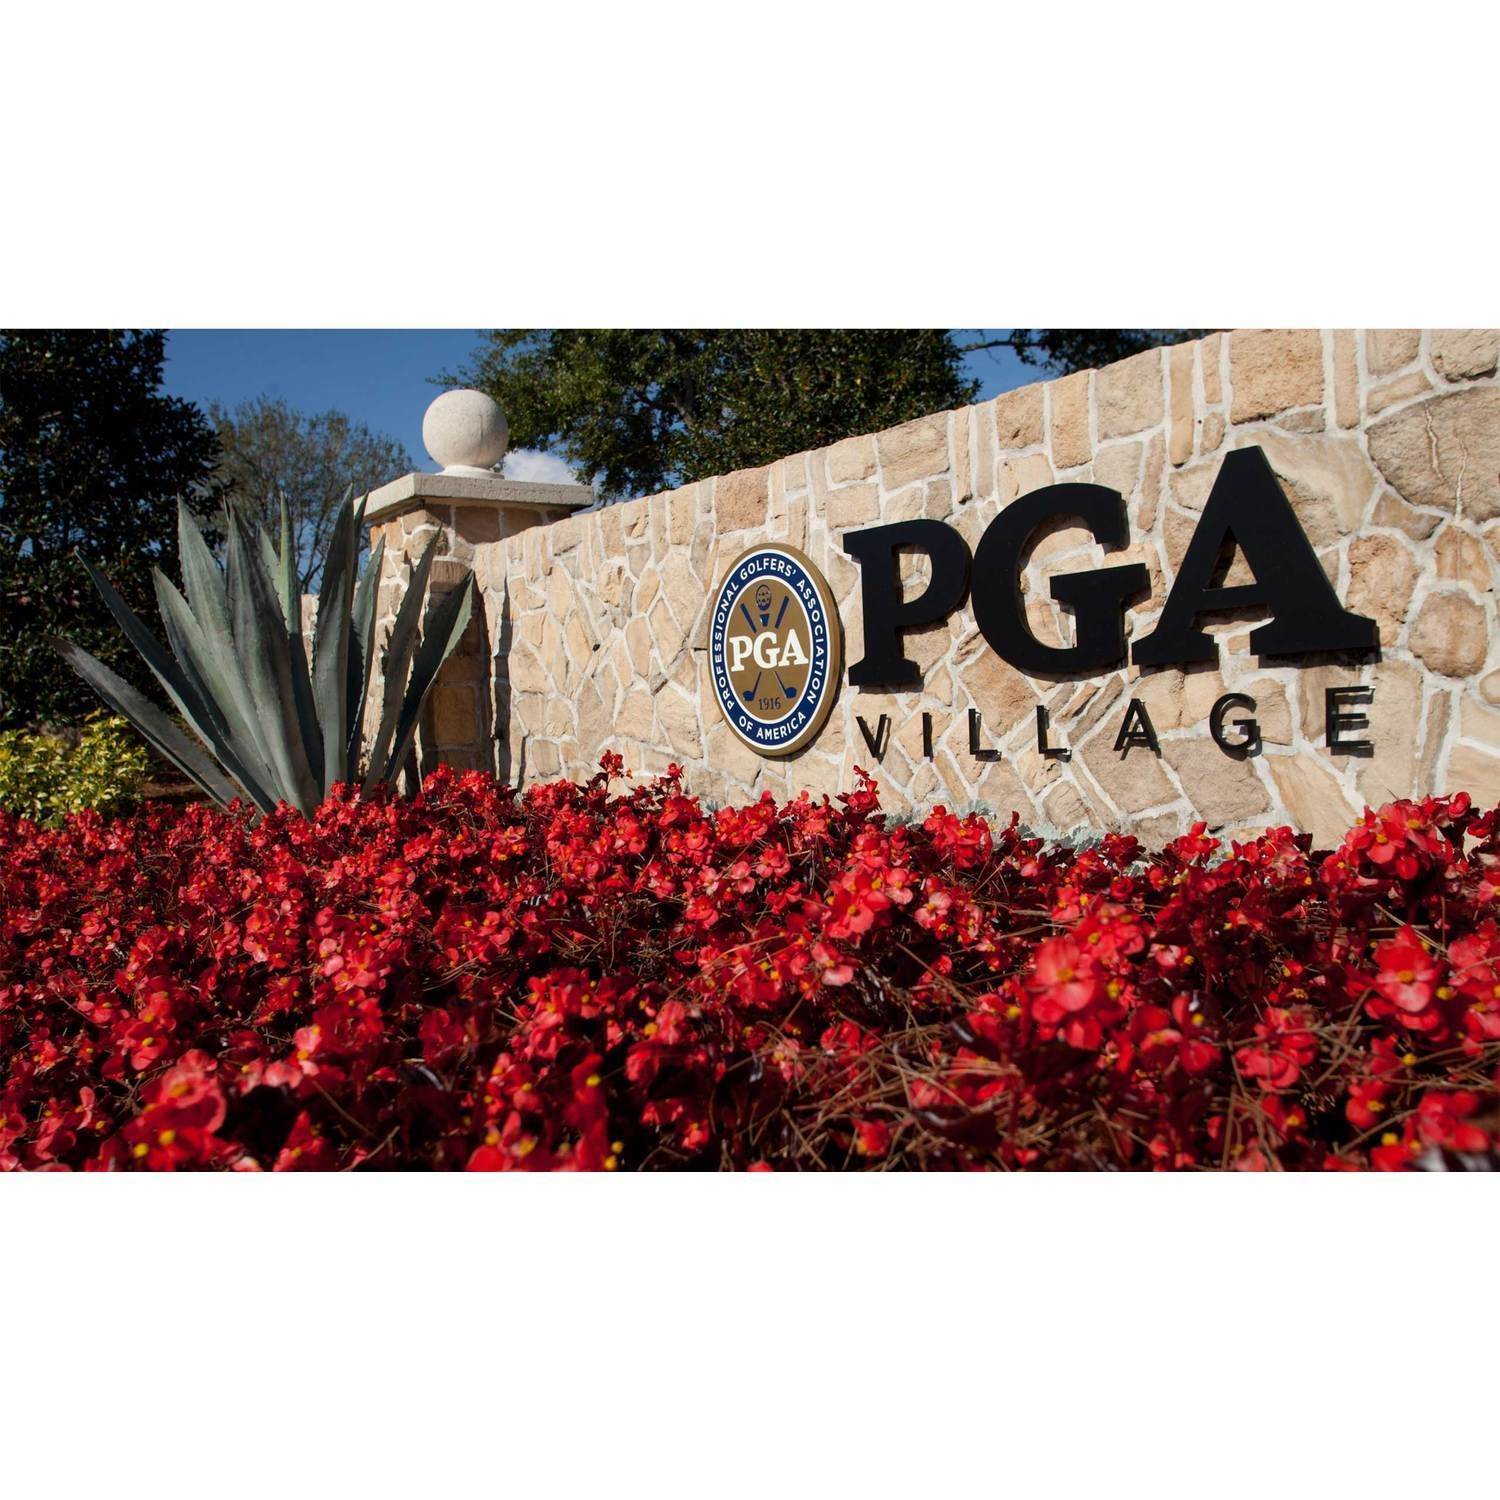 15. PGA Village Verano edificio en 9250 SW Visconti Way, Port St. Lucie, FL 34986